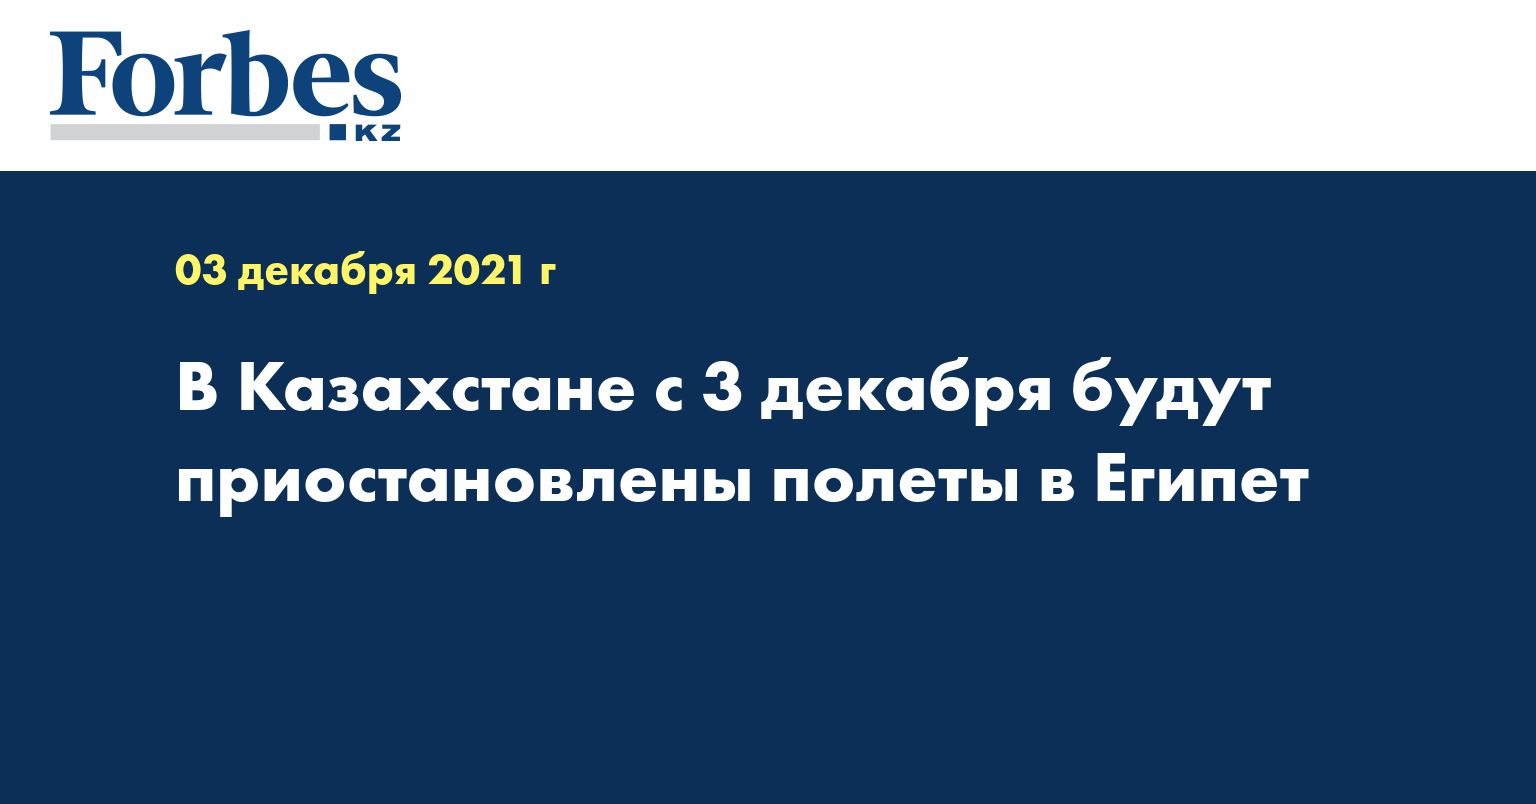 В Казахстане с 3 декабря будут приостановлены полеты в Египет